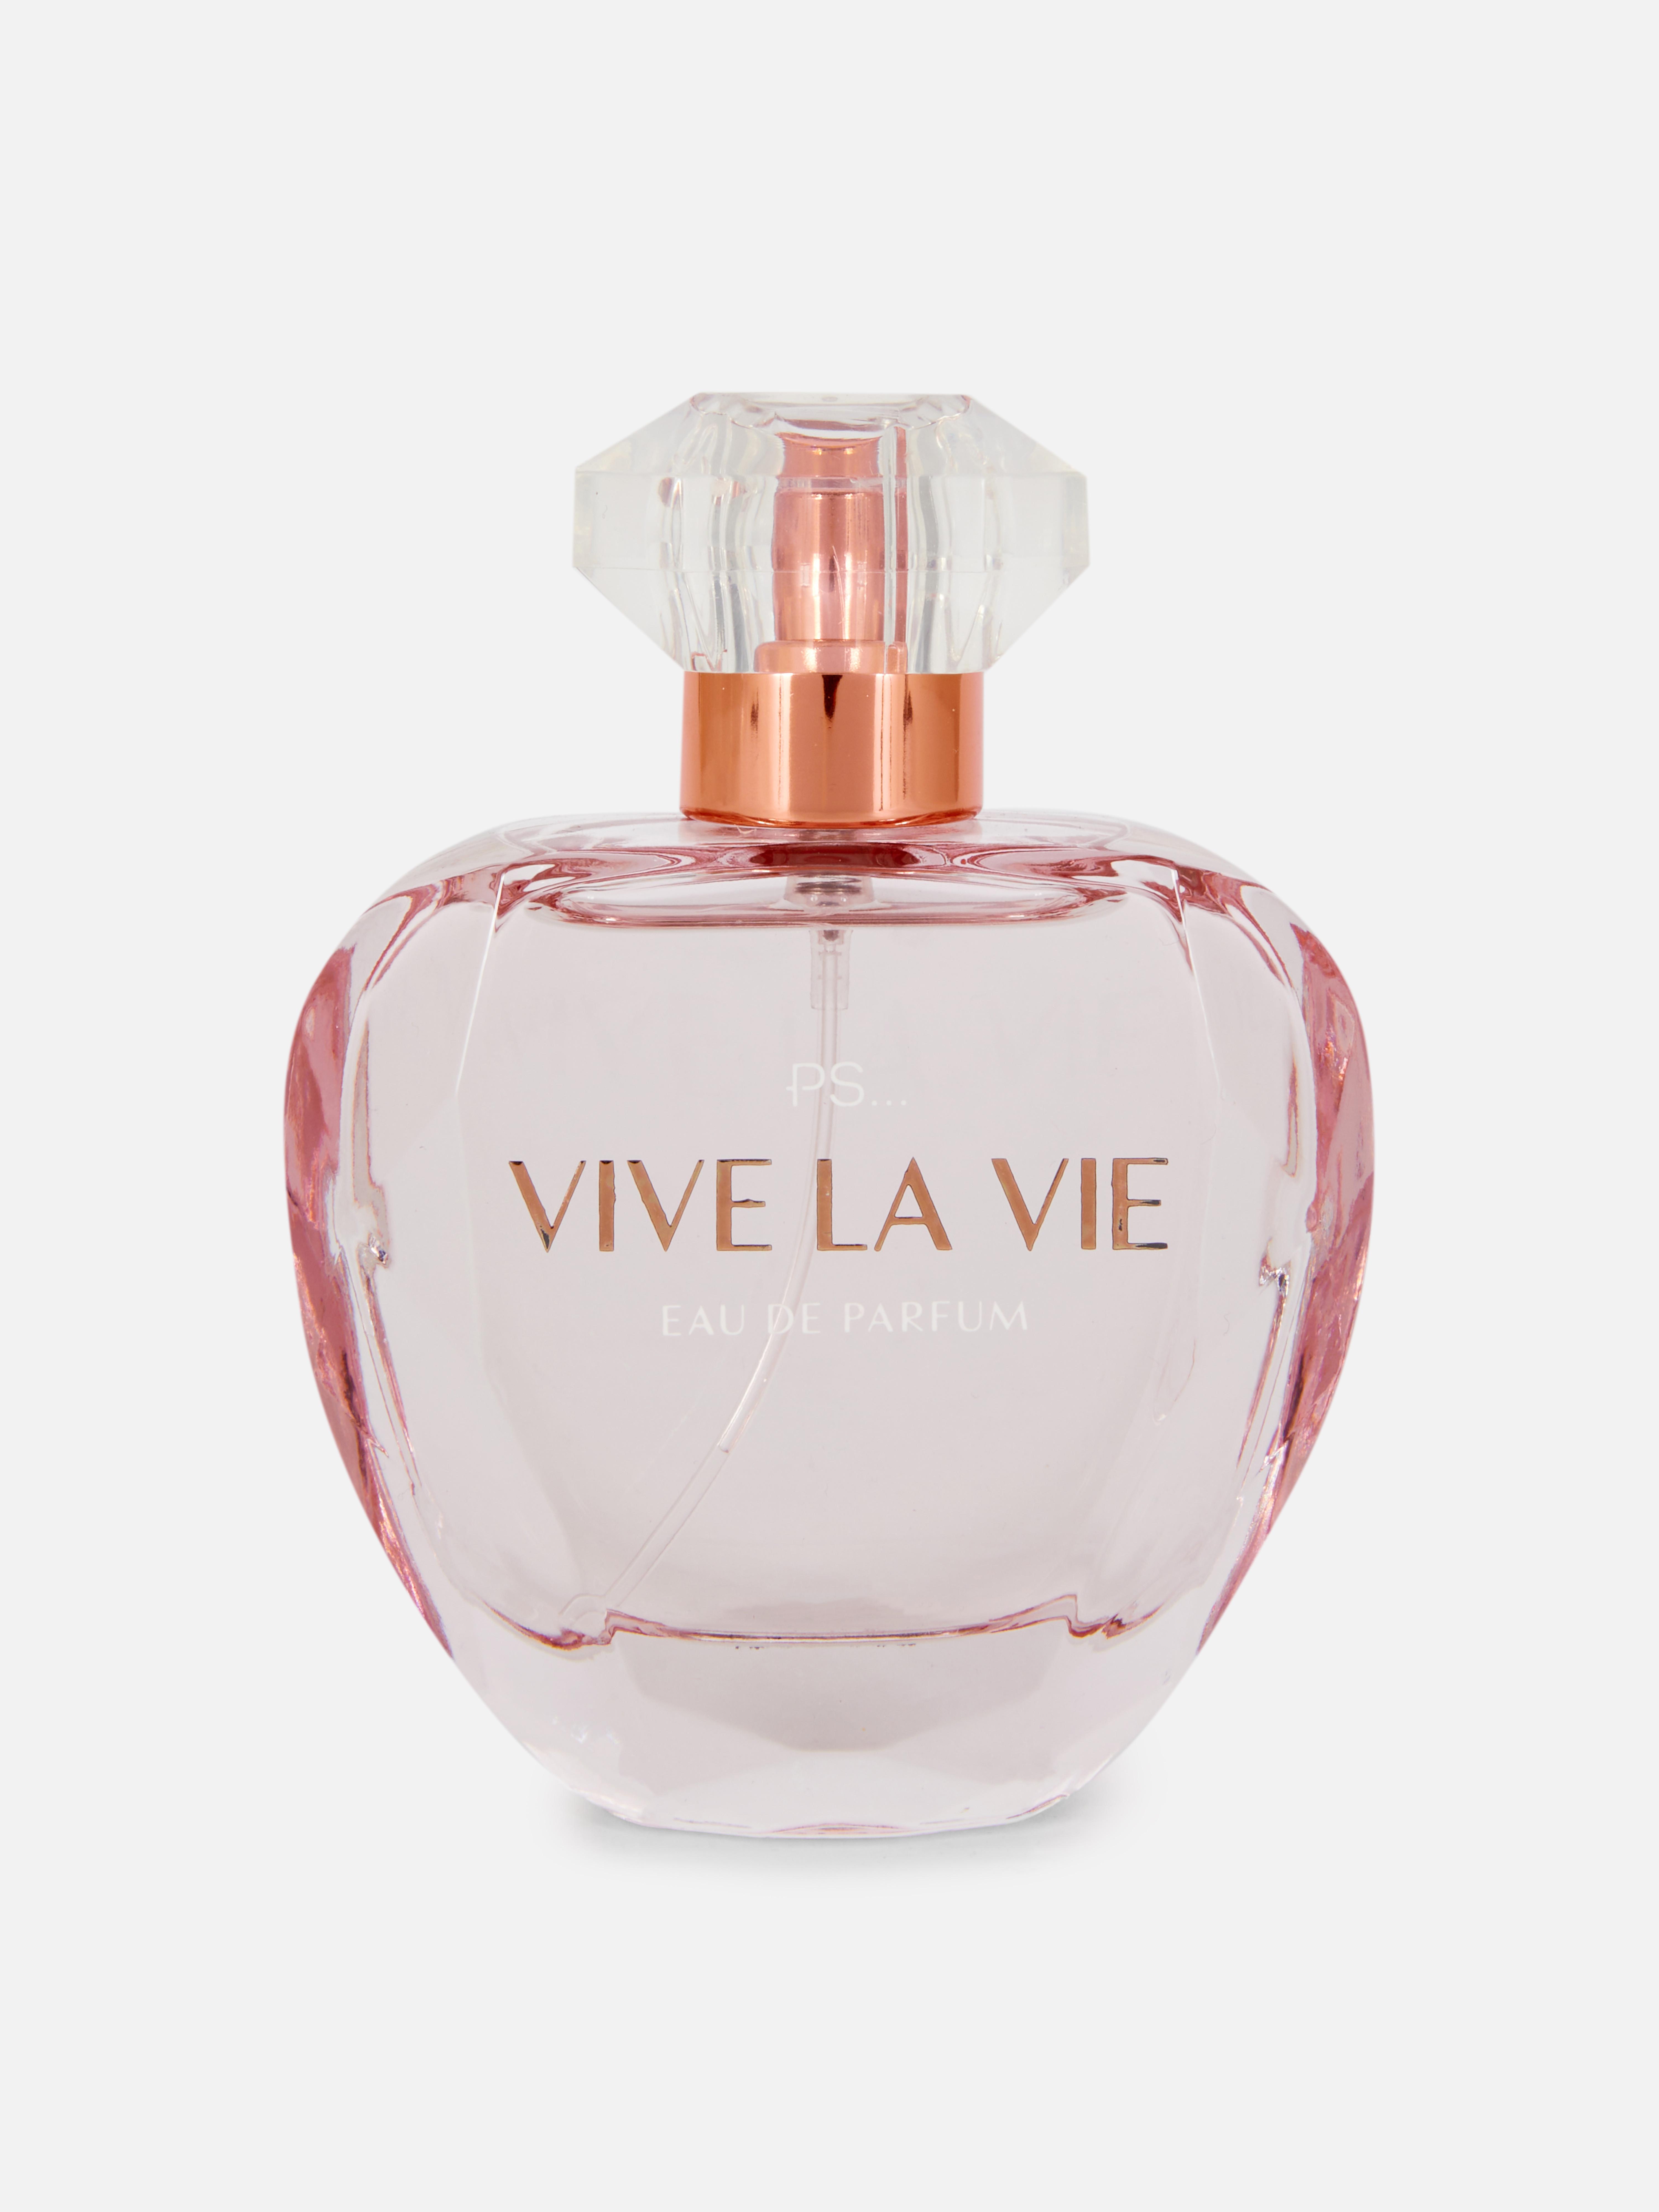 PS… „Vive La Vie“ Eau de Parfum